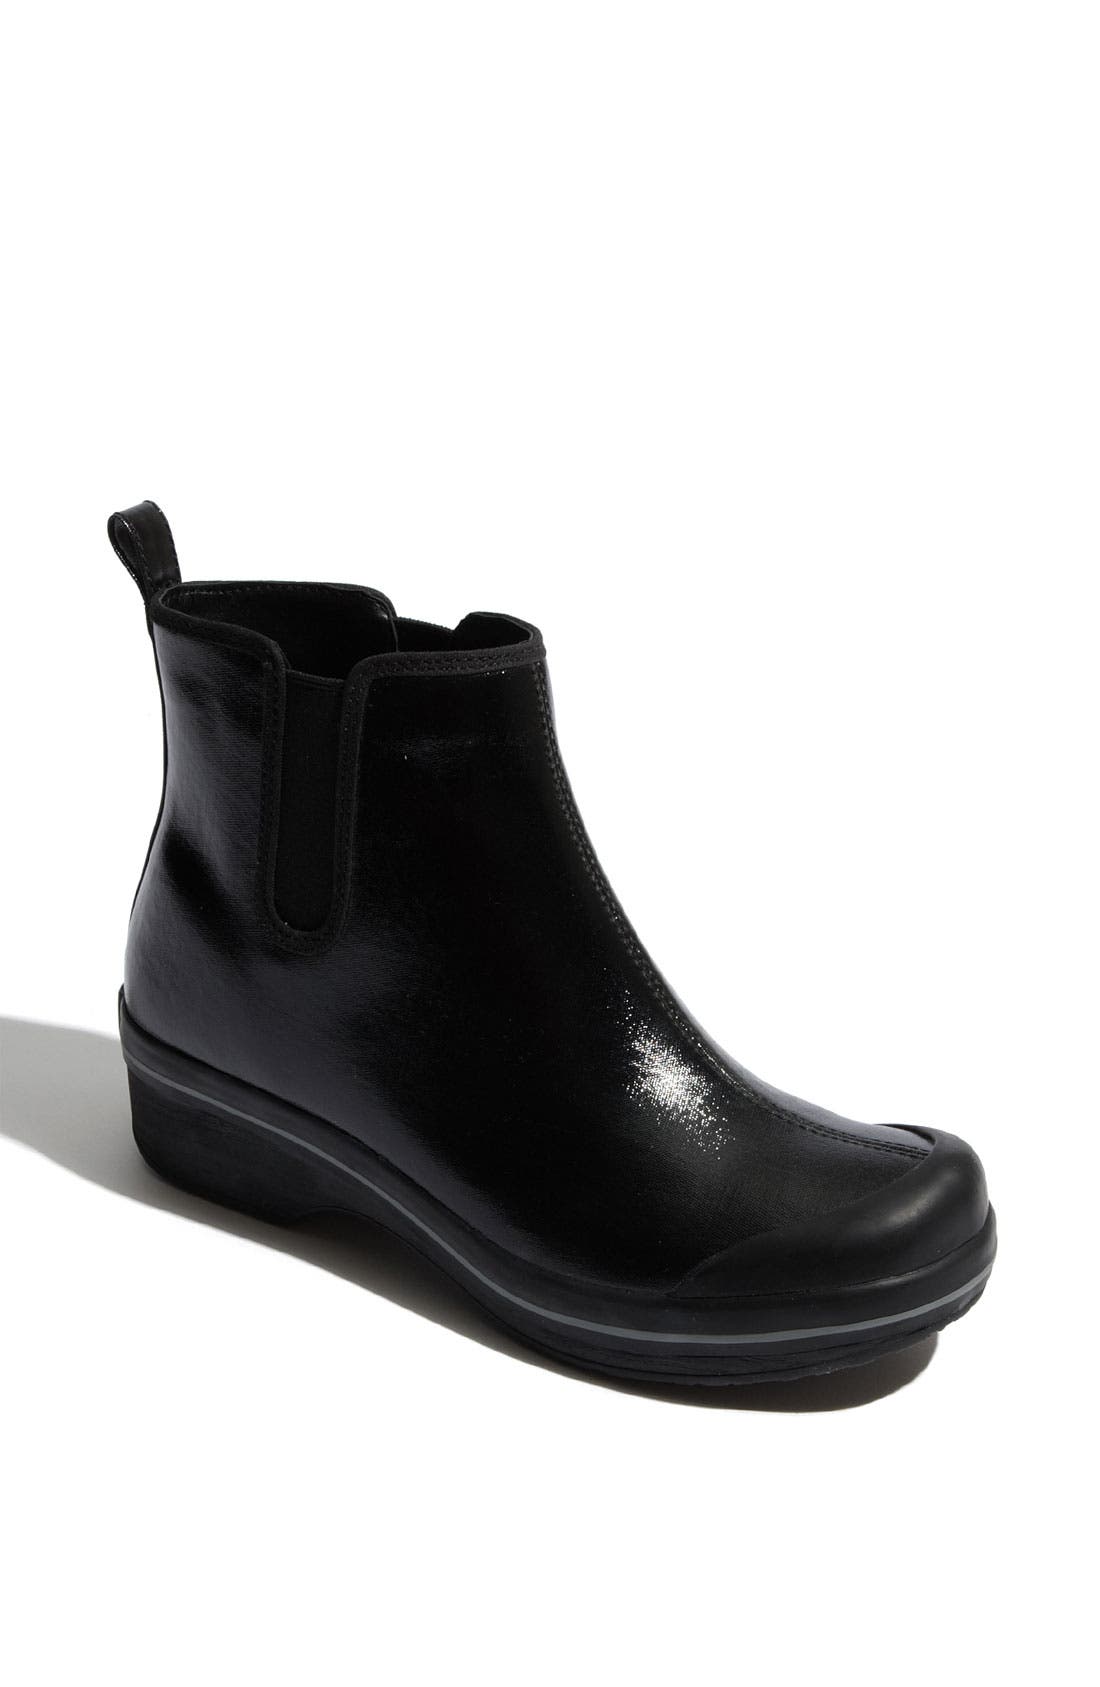 dansko rubber boots